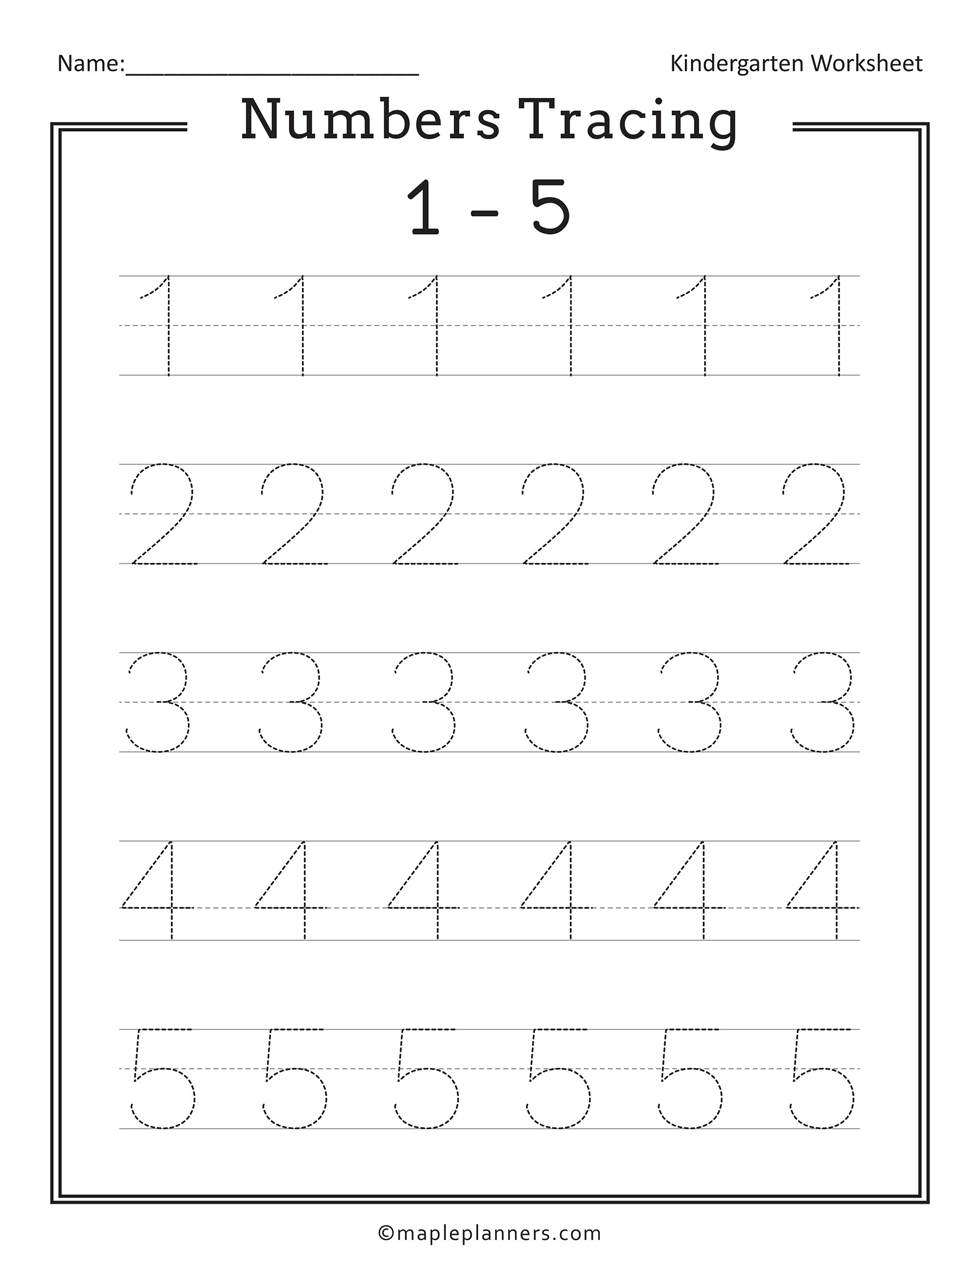 Numbers 1-5 Tracing Worksheet Printable